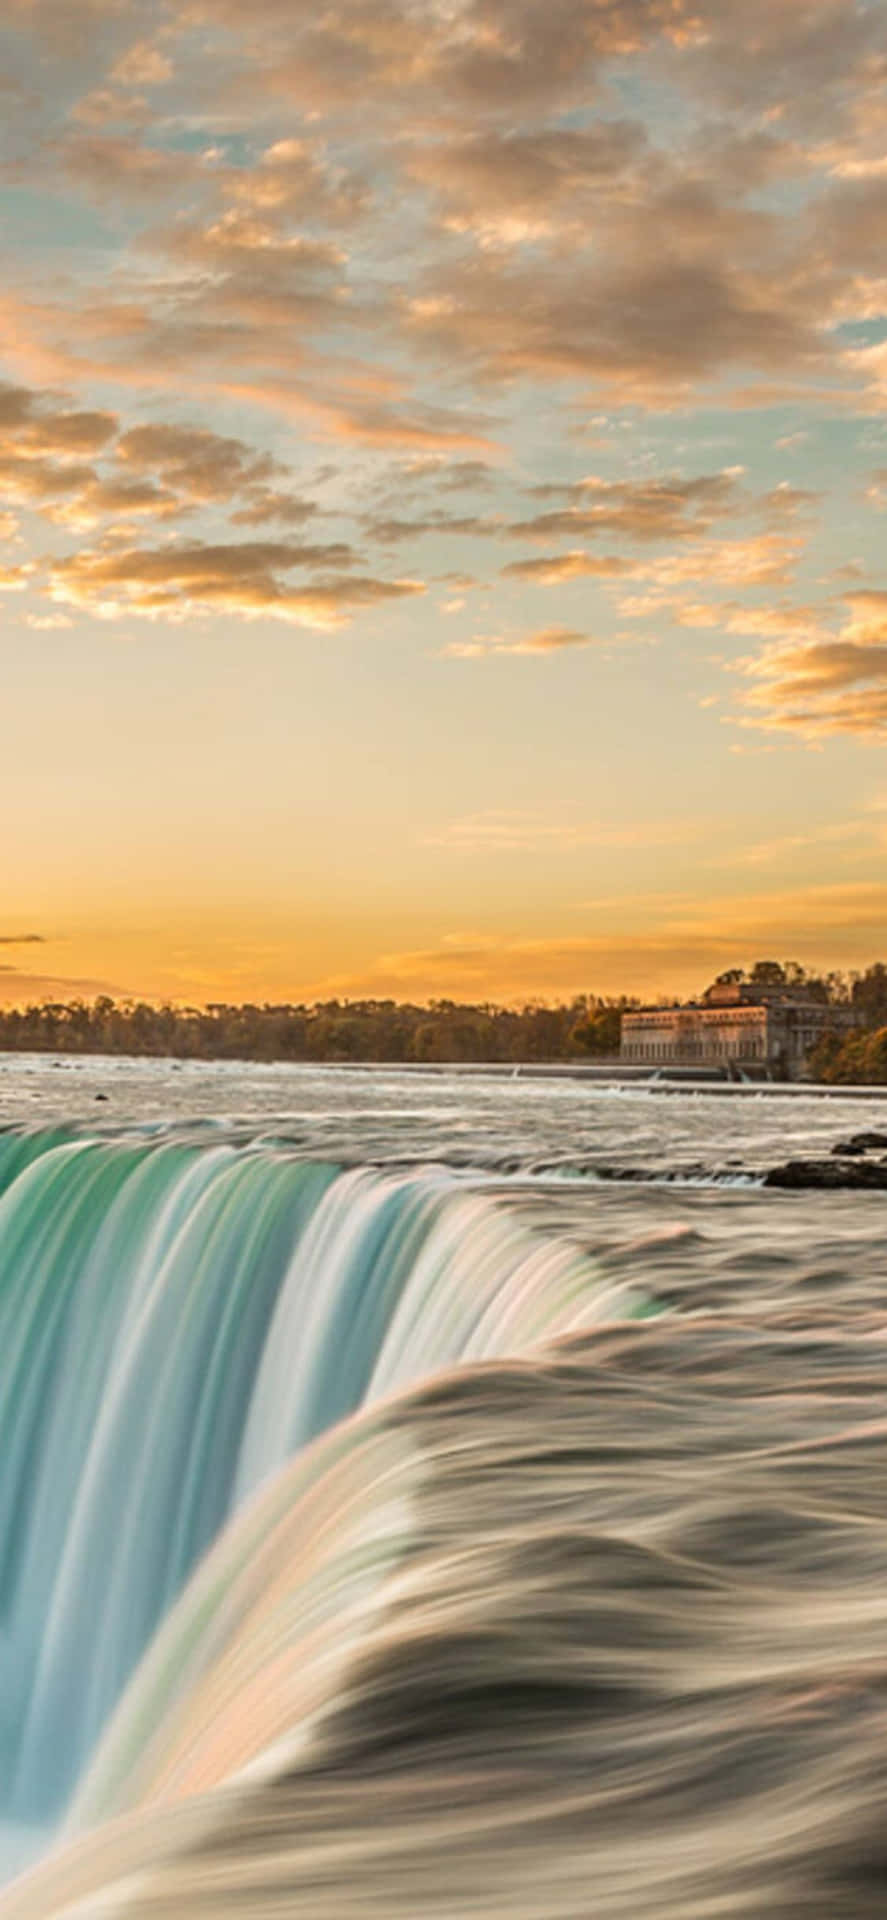 iPhone X Niagara Falls At Sunset Background